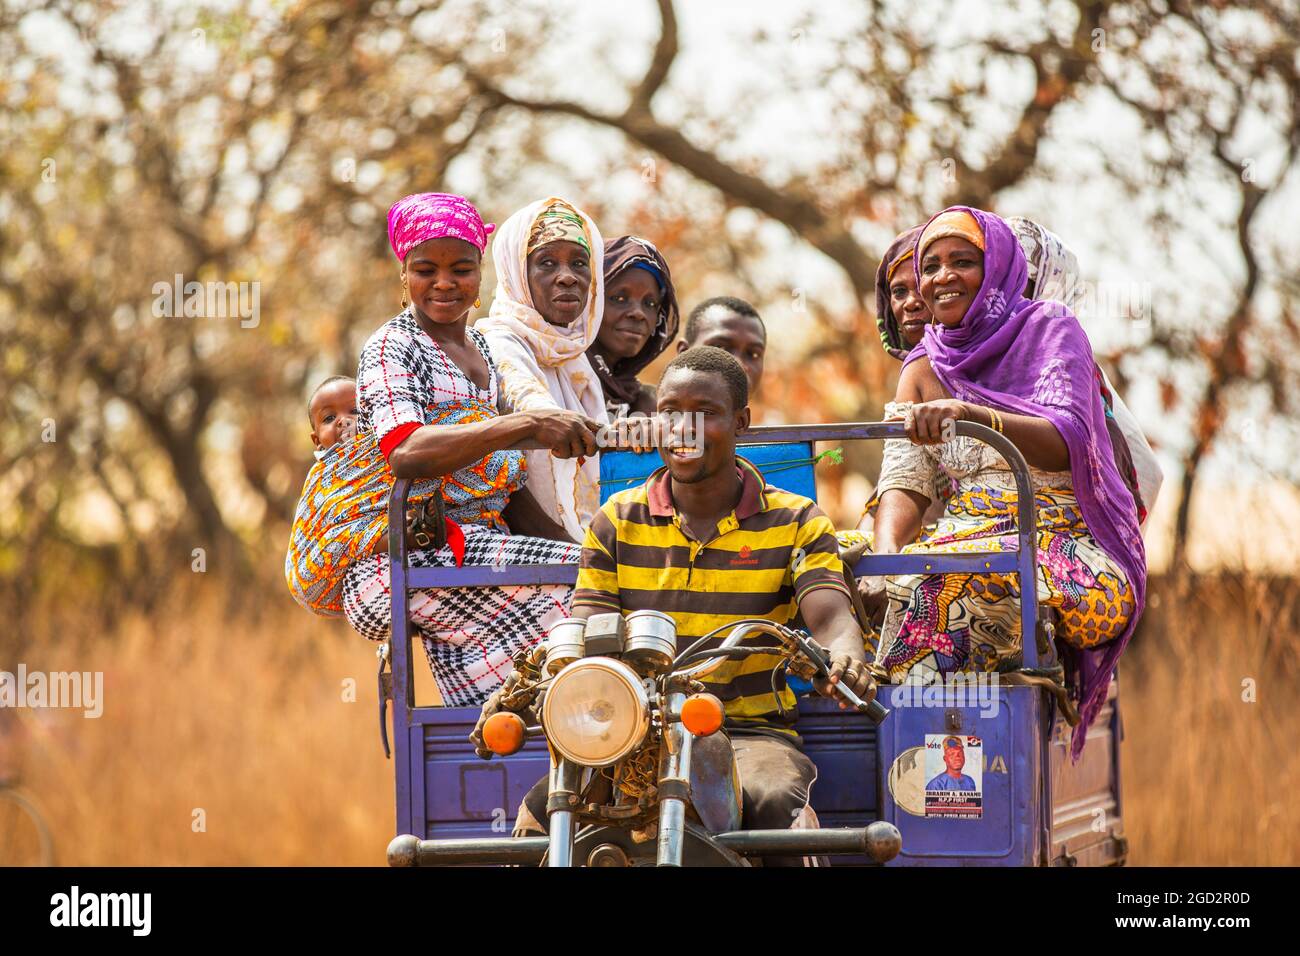 Un homme conduisant une moto chariot ferries ouest Afrique village femmes ca. 21 février 2018 Banque D'Images